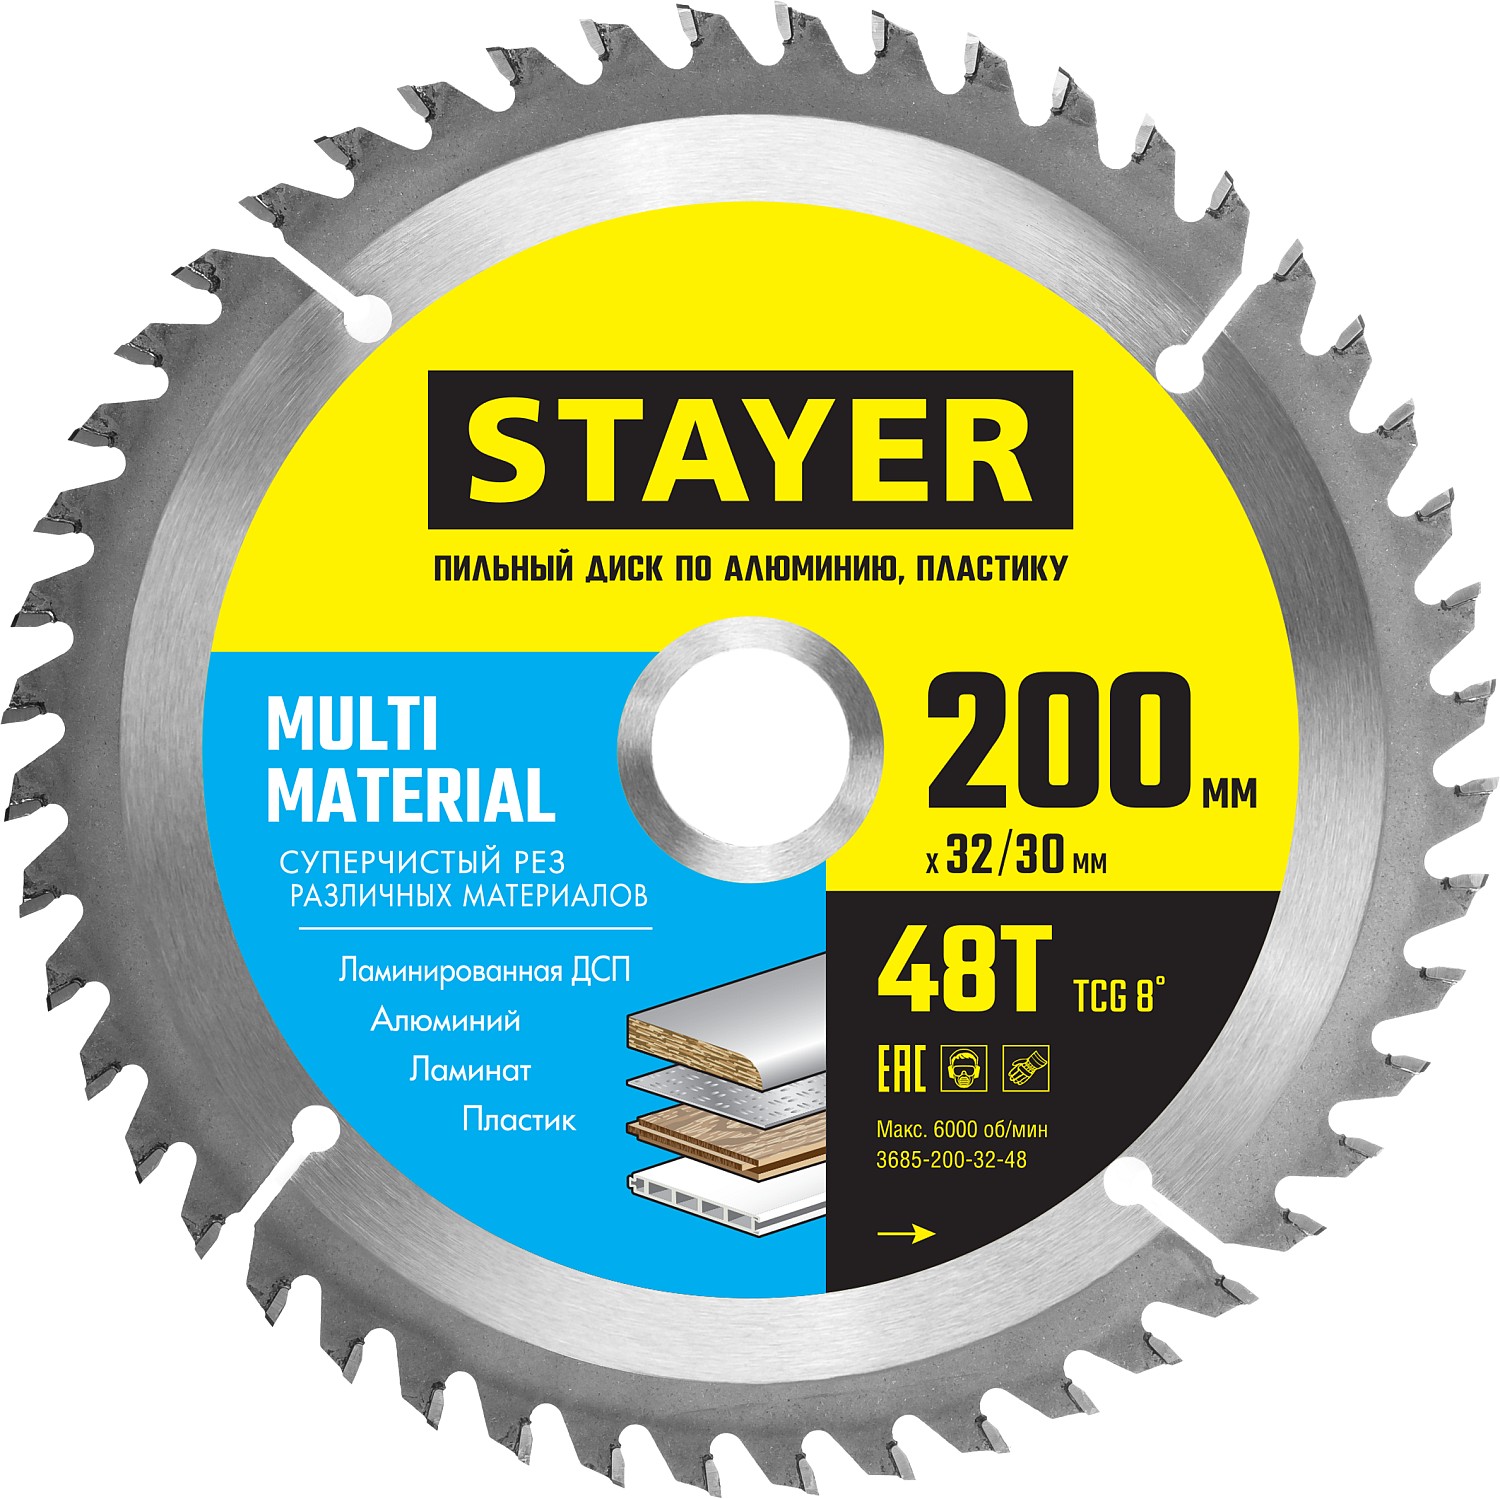 Диск пильный по алюминию Stayer Multy material 3685-200-32-48 200х32/30мм 48Т